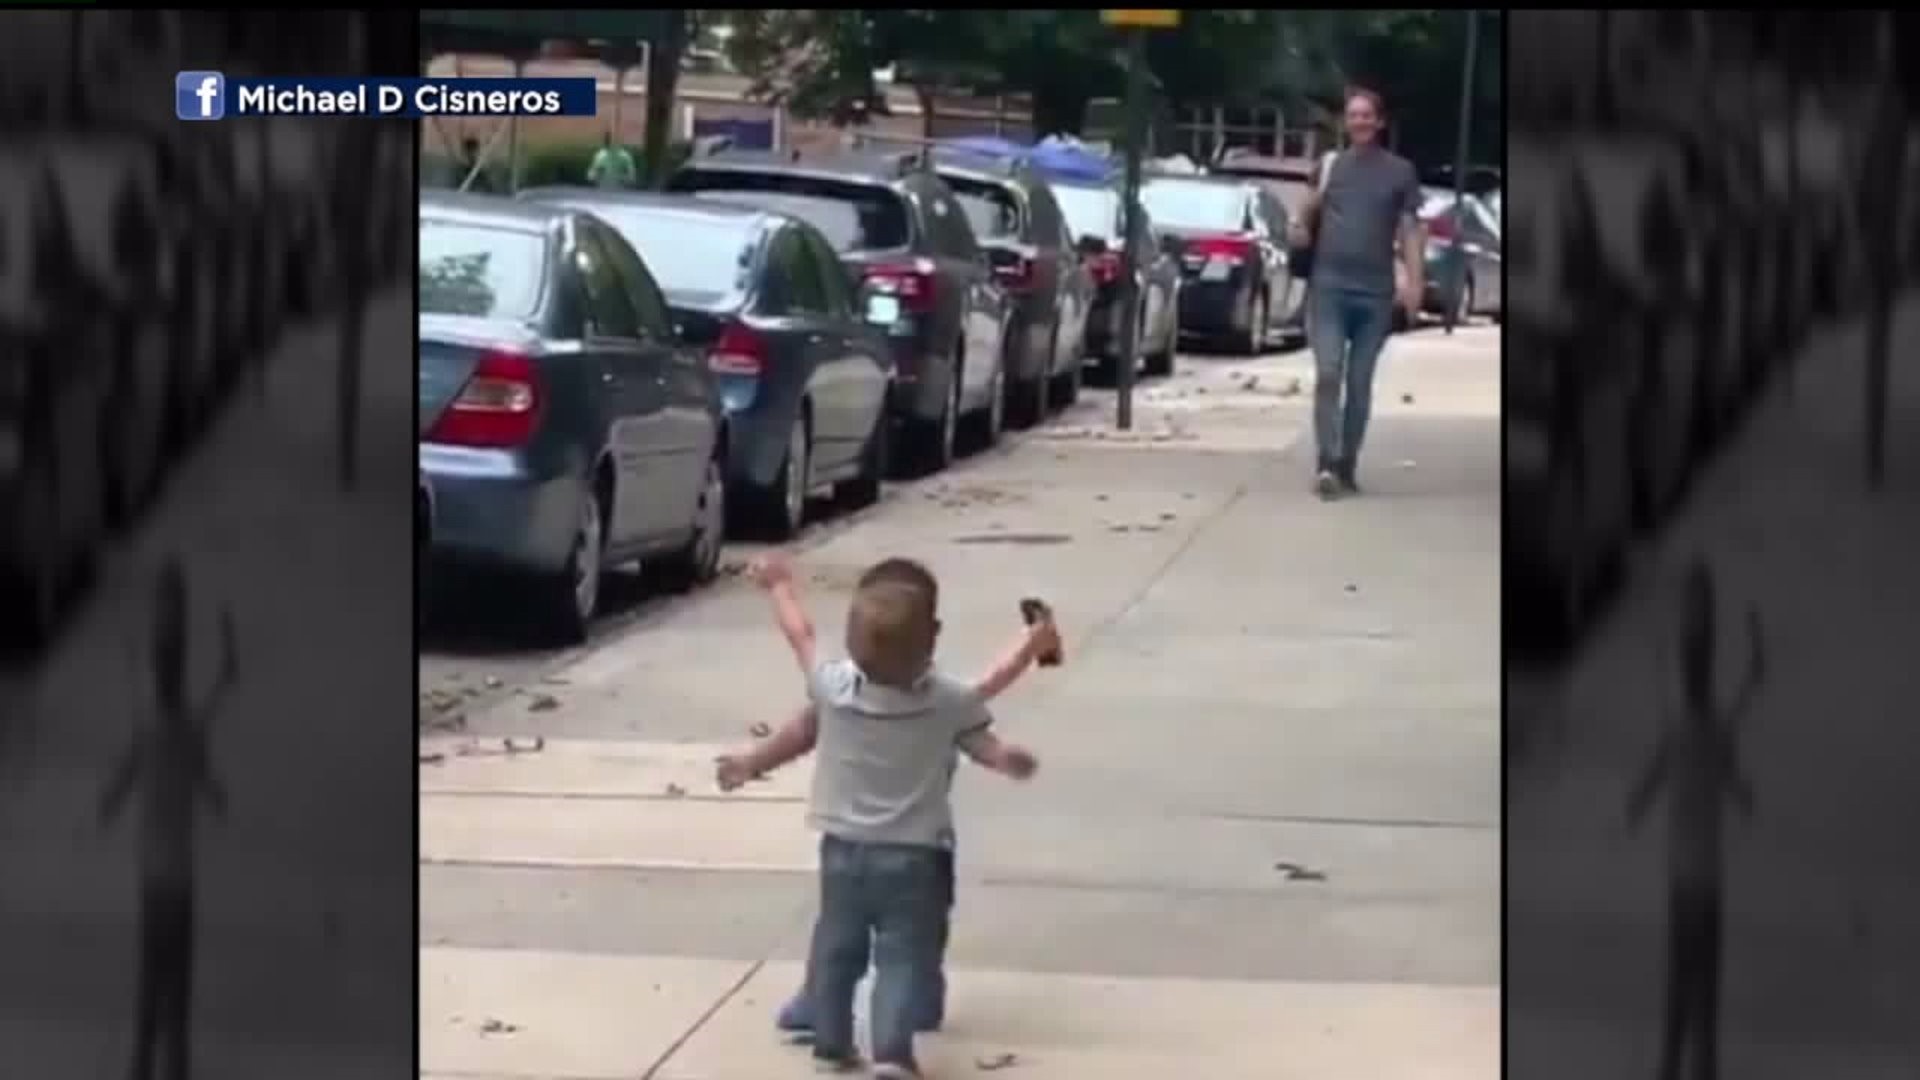 Toddlers hug in viral video